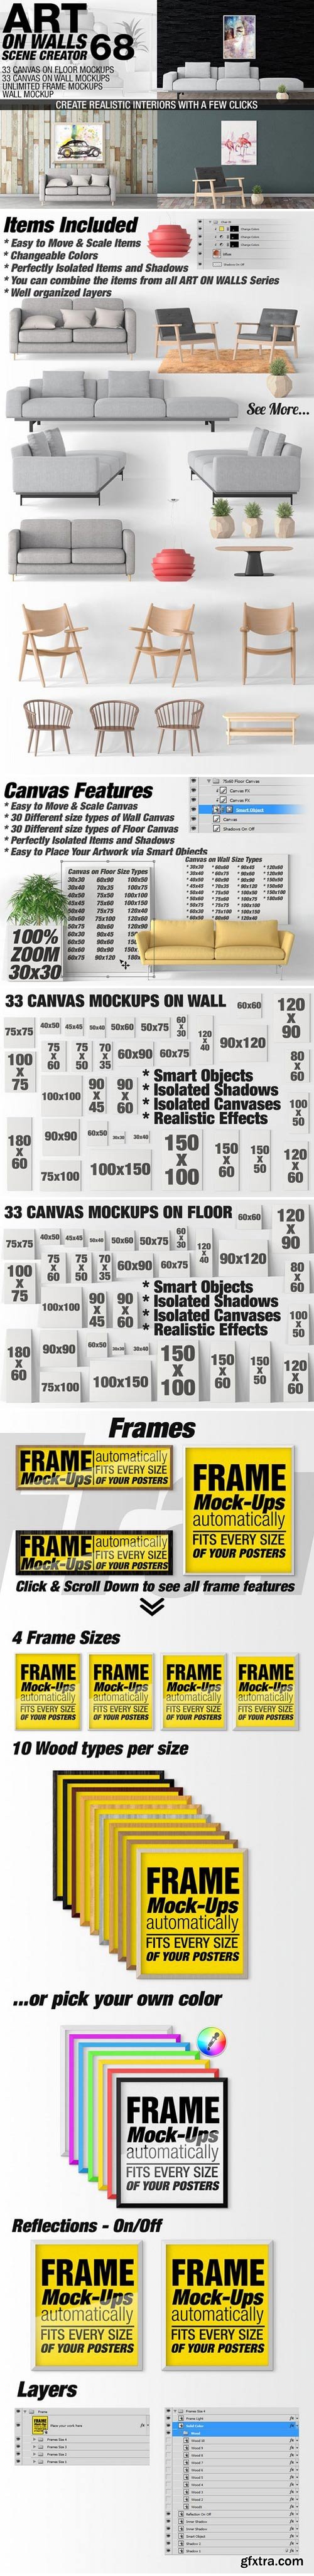 CM - Canvas Mockups - Frames Mockups v 68 1519606